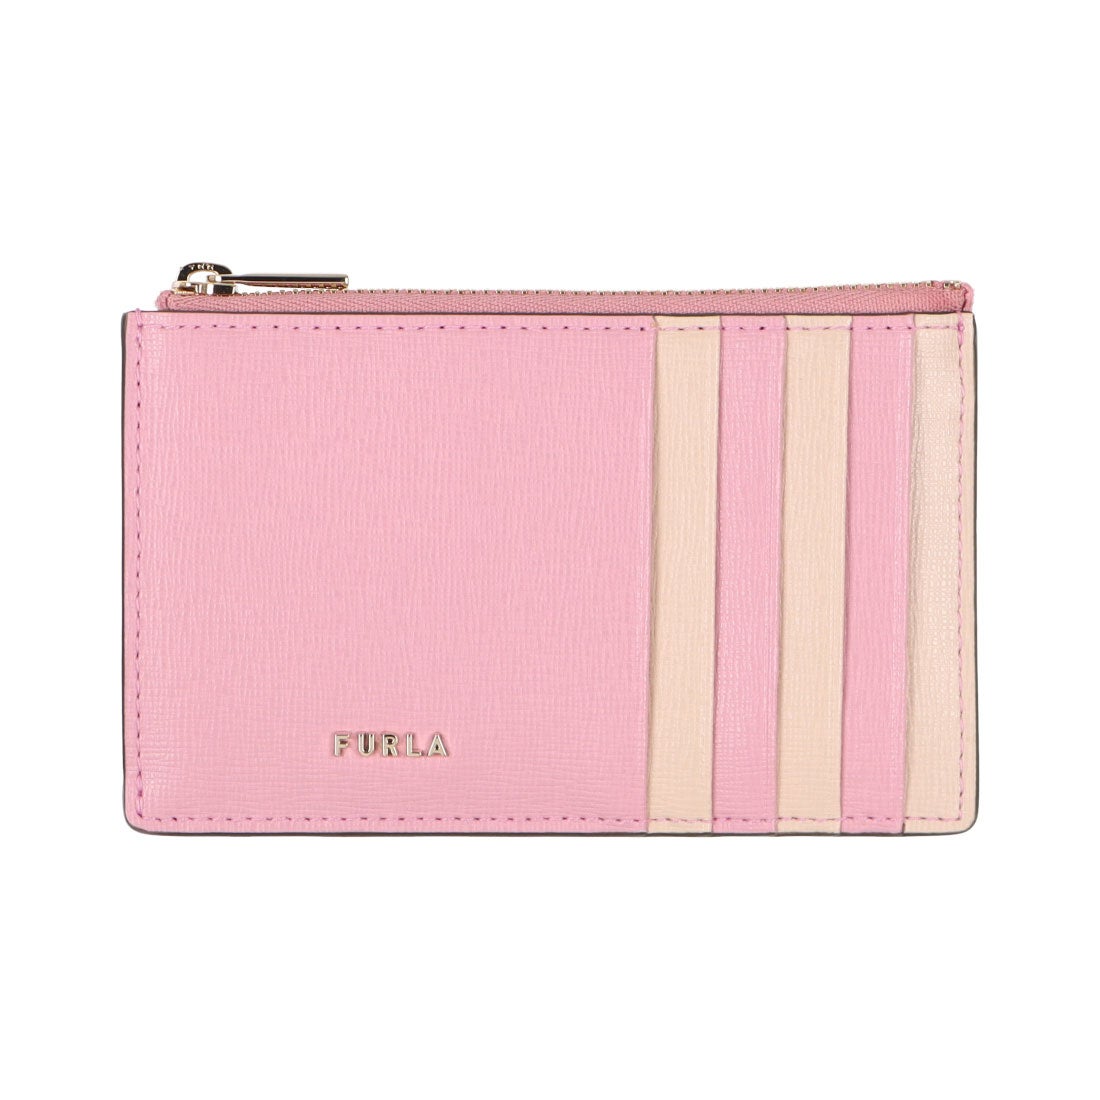 【新品未使用品】FURLA フルラ 財布 カードケース